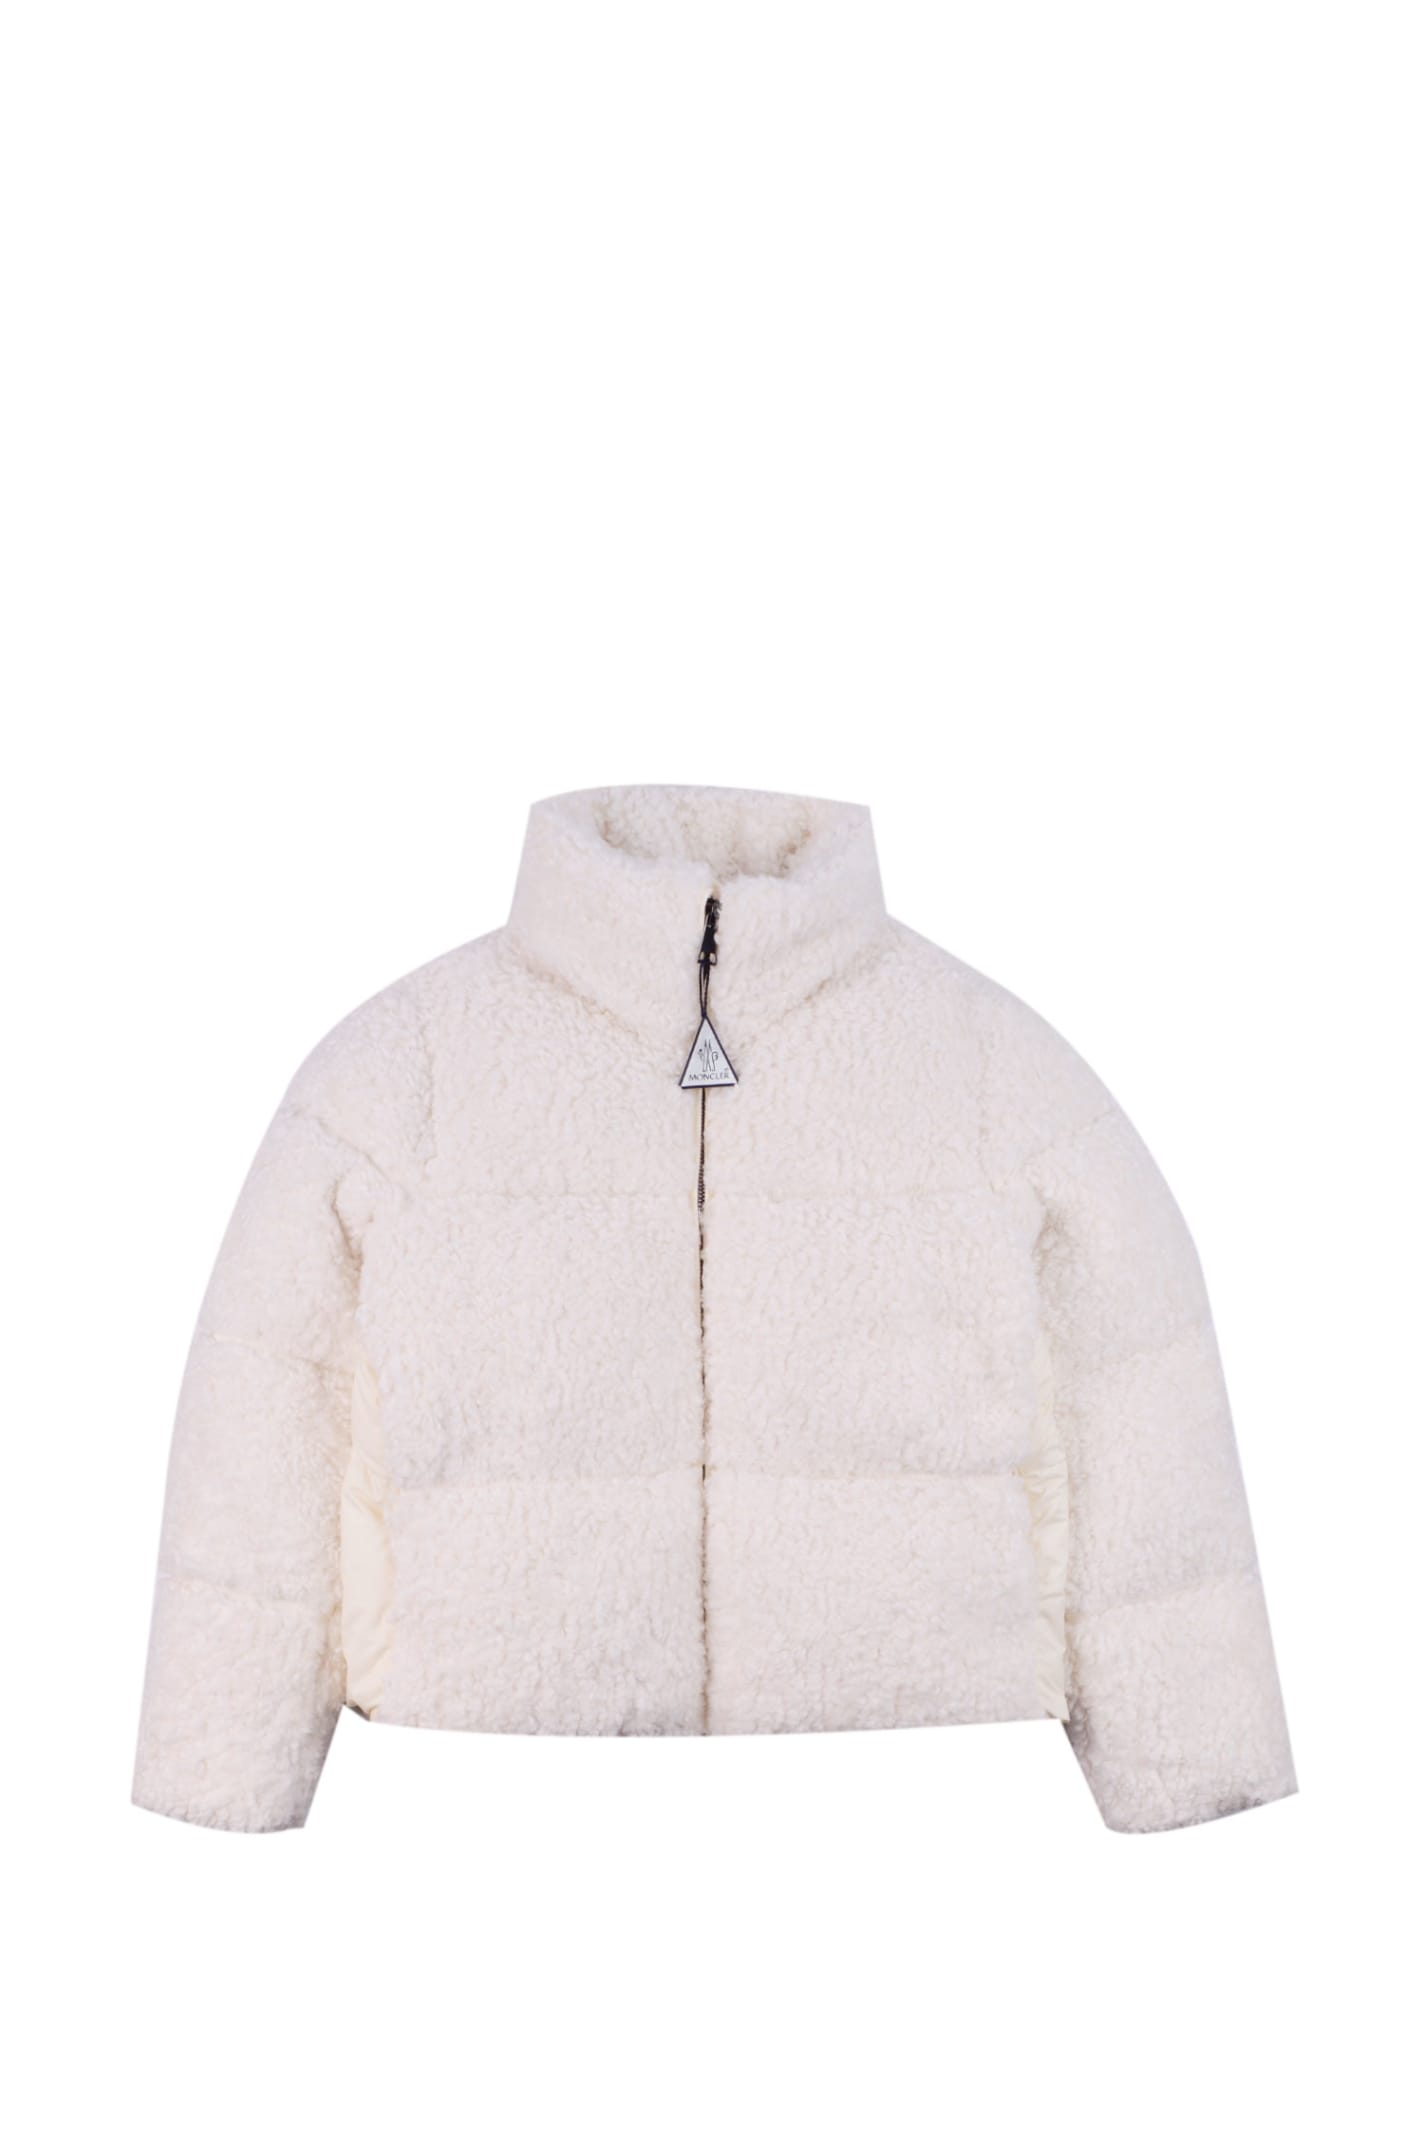 Moncler Kids' Teddy Effect Fleece Down Jacket In White